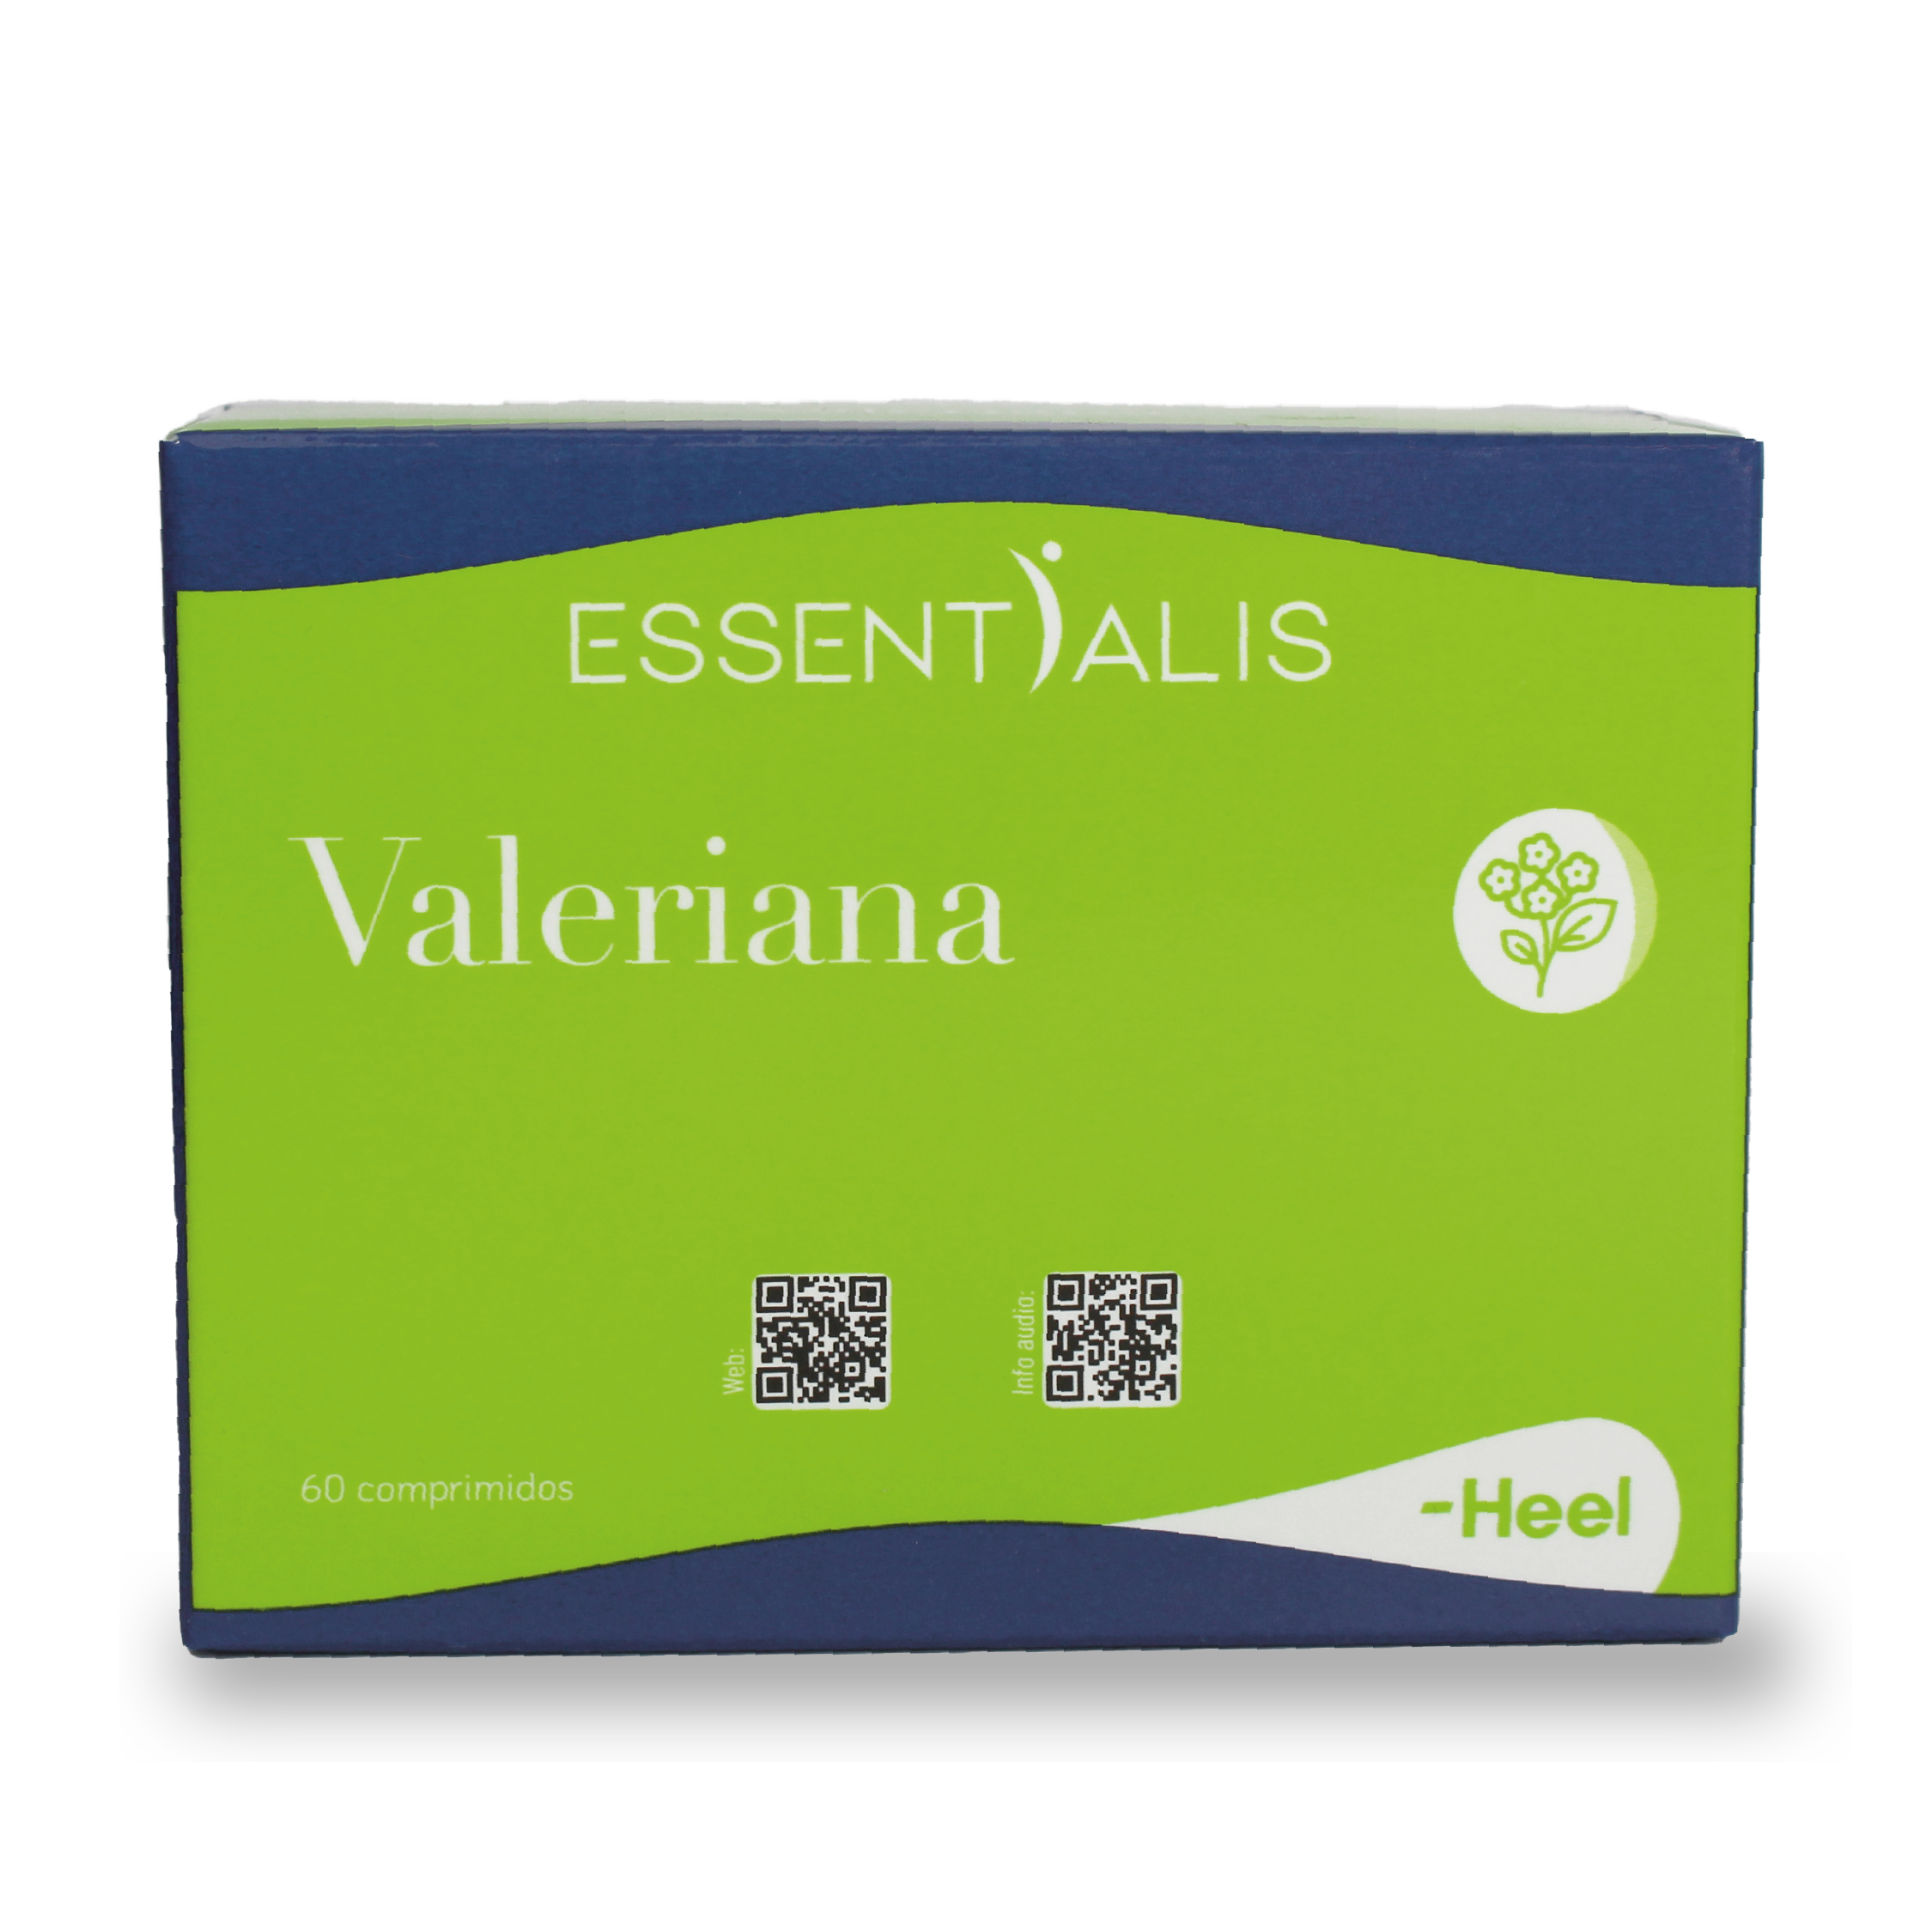 Caja de Essentialis Valeriana